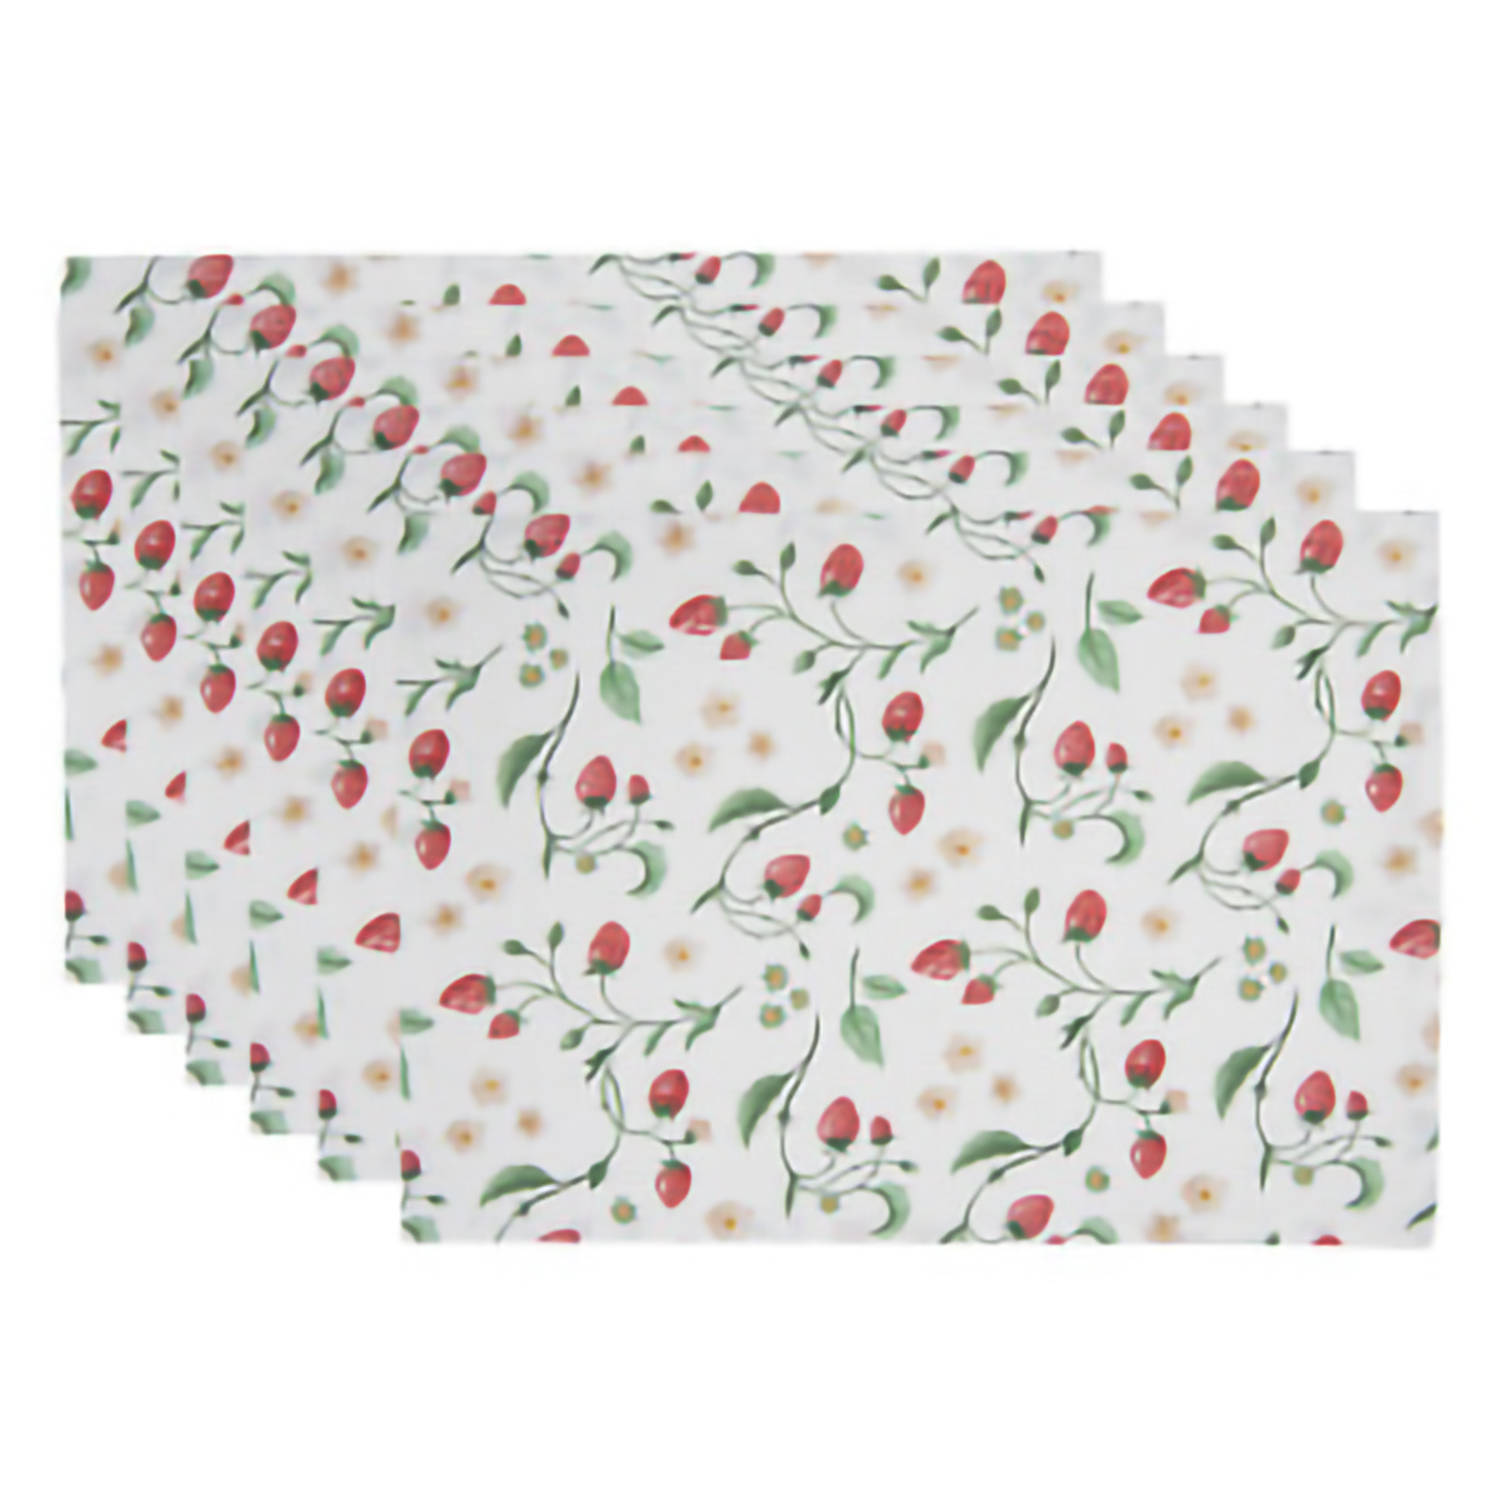 HAES DECO - Set van 6 Placemats - formaat 48x33 cm - kleuren Rood / Groen / Wit - van 100% Katoen - Collectie: Wild Strawberries